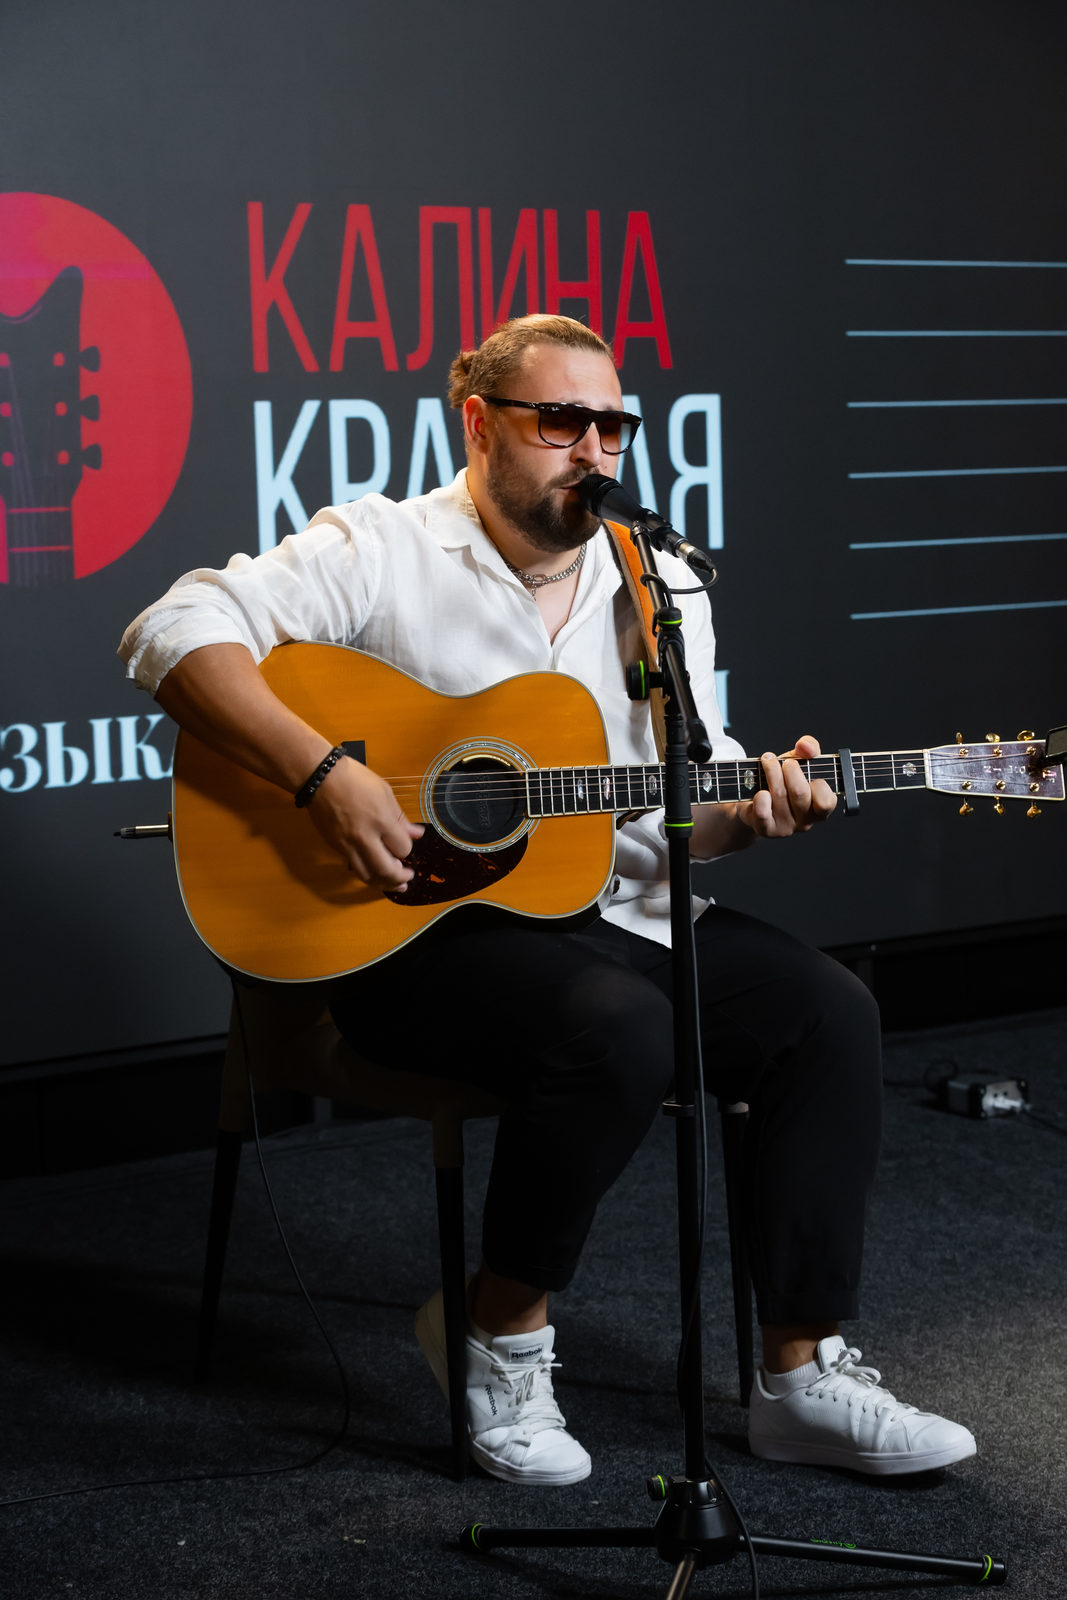 Звёзды бардовской устроили пятичасовой концерт в честь дня рождения радиостанции «Калина Красная»